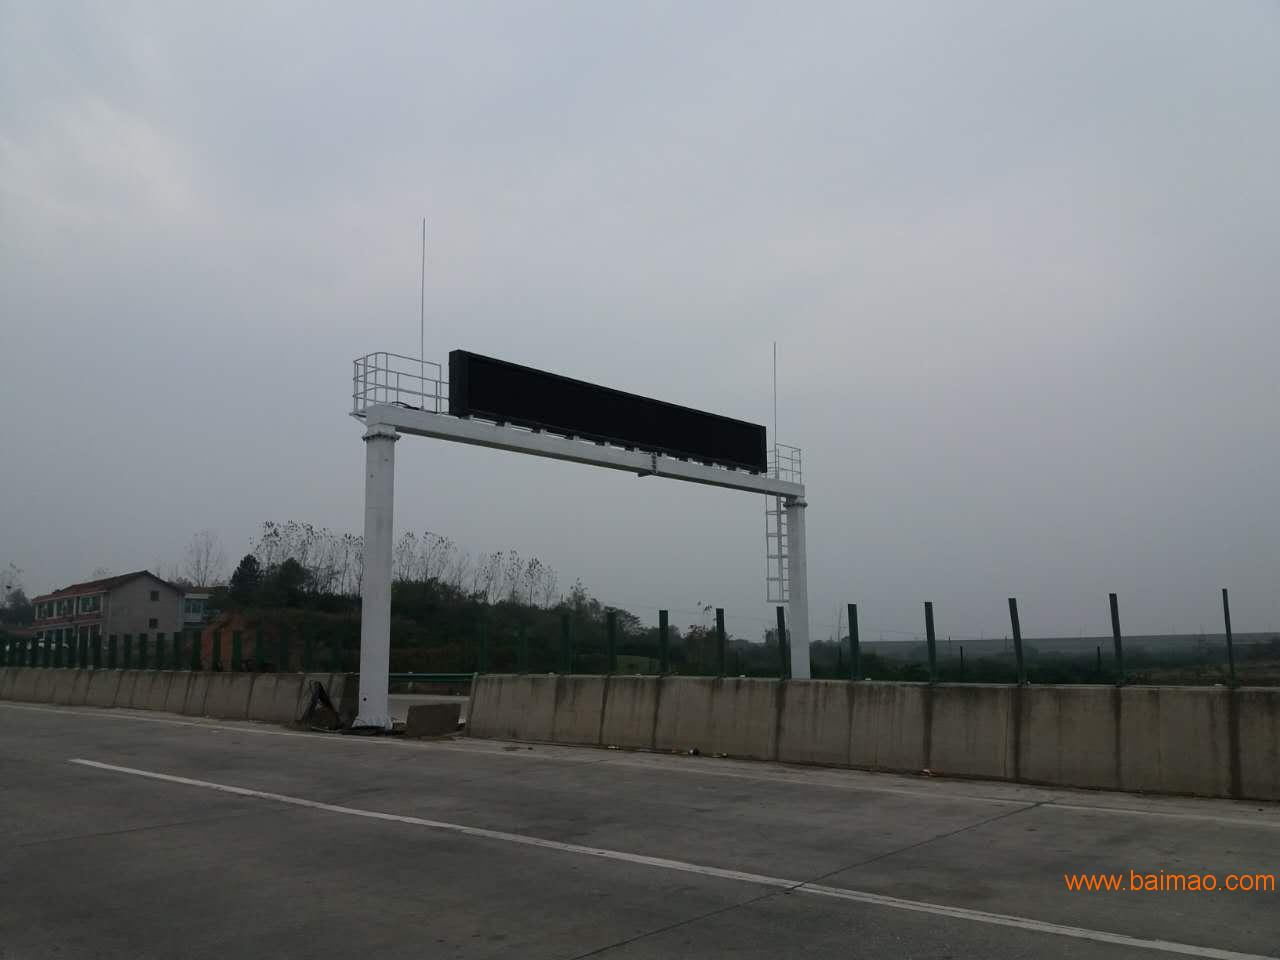 森韵中标供应湖南省高速公路交通诱导屏，高速诱导屏